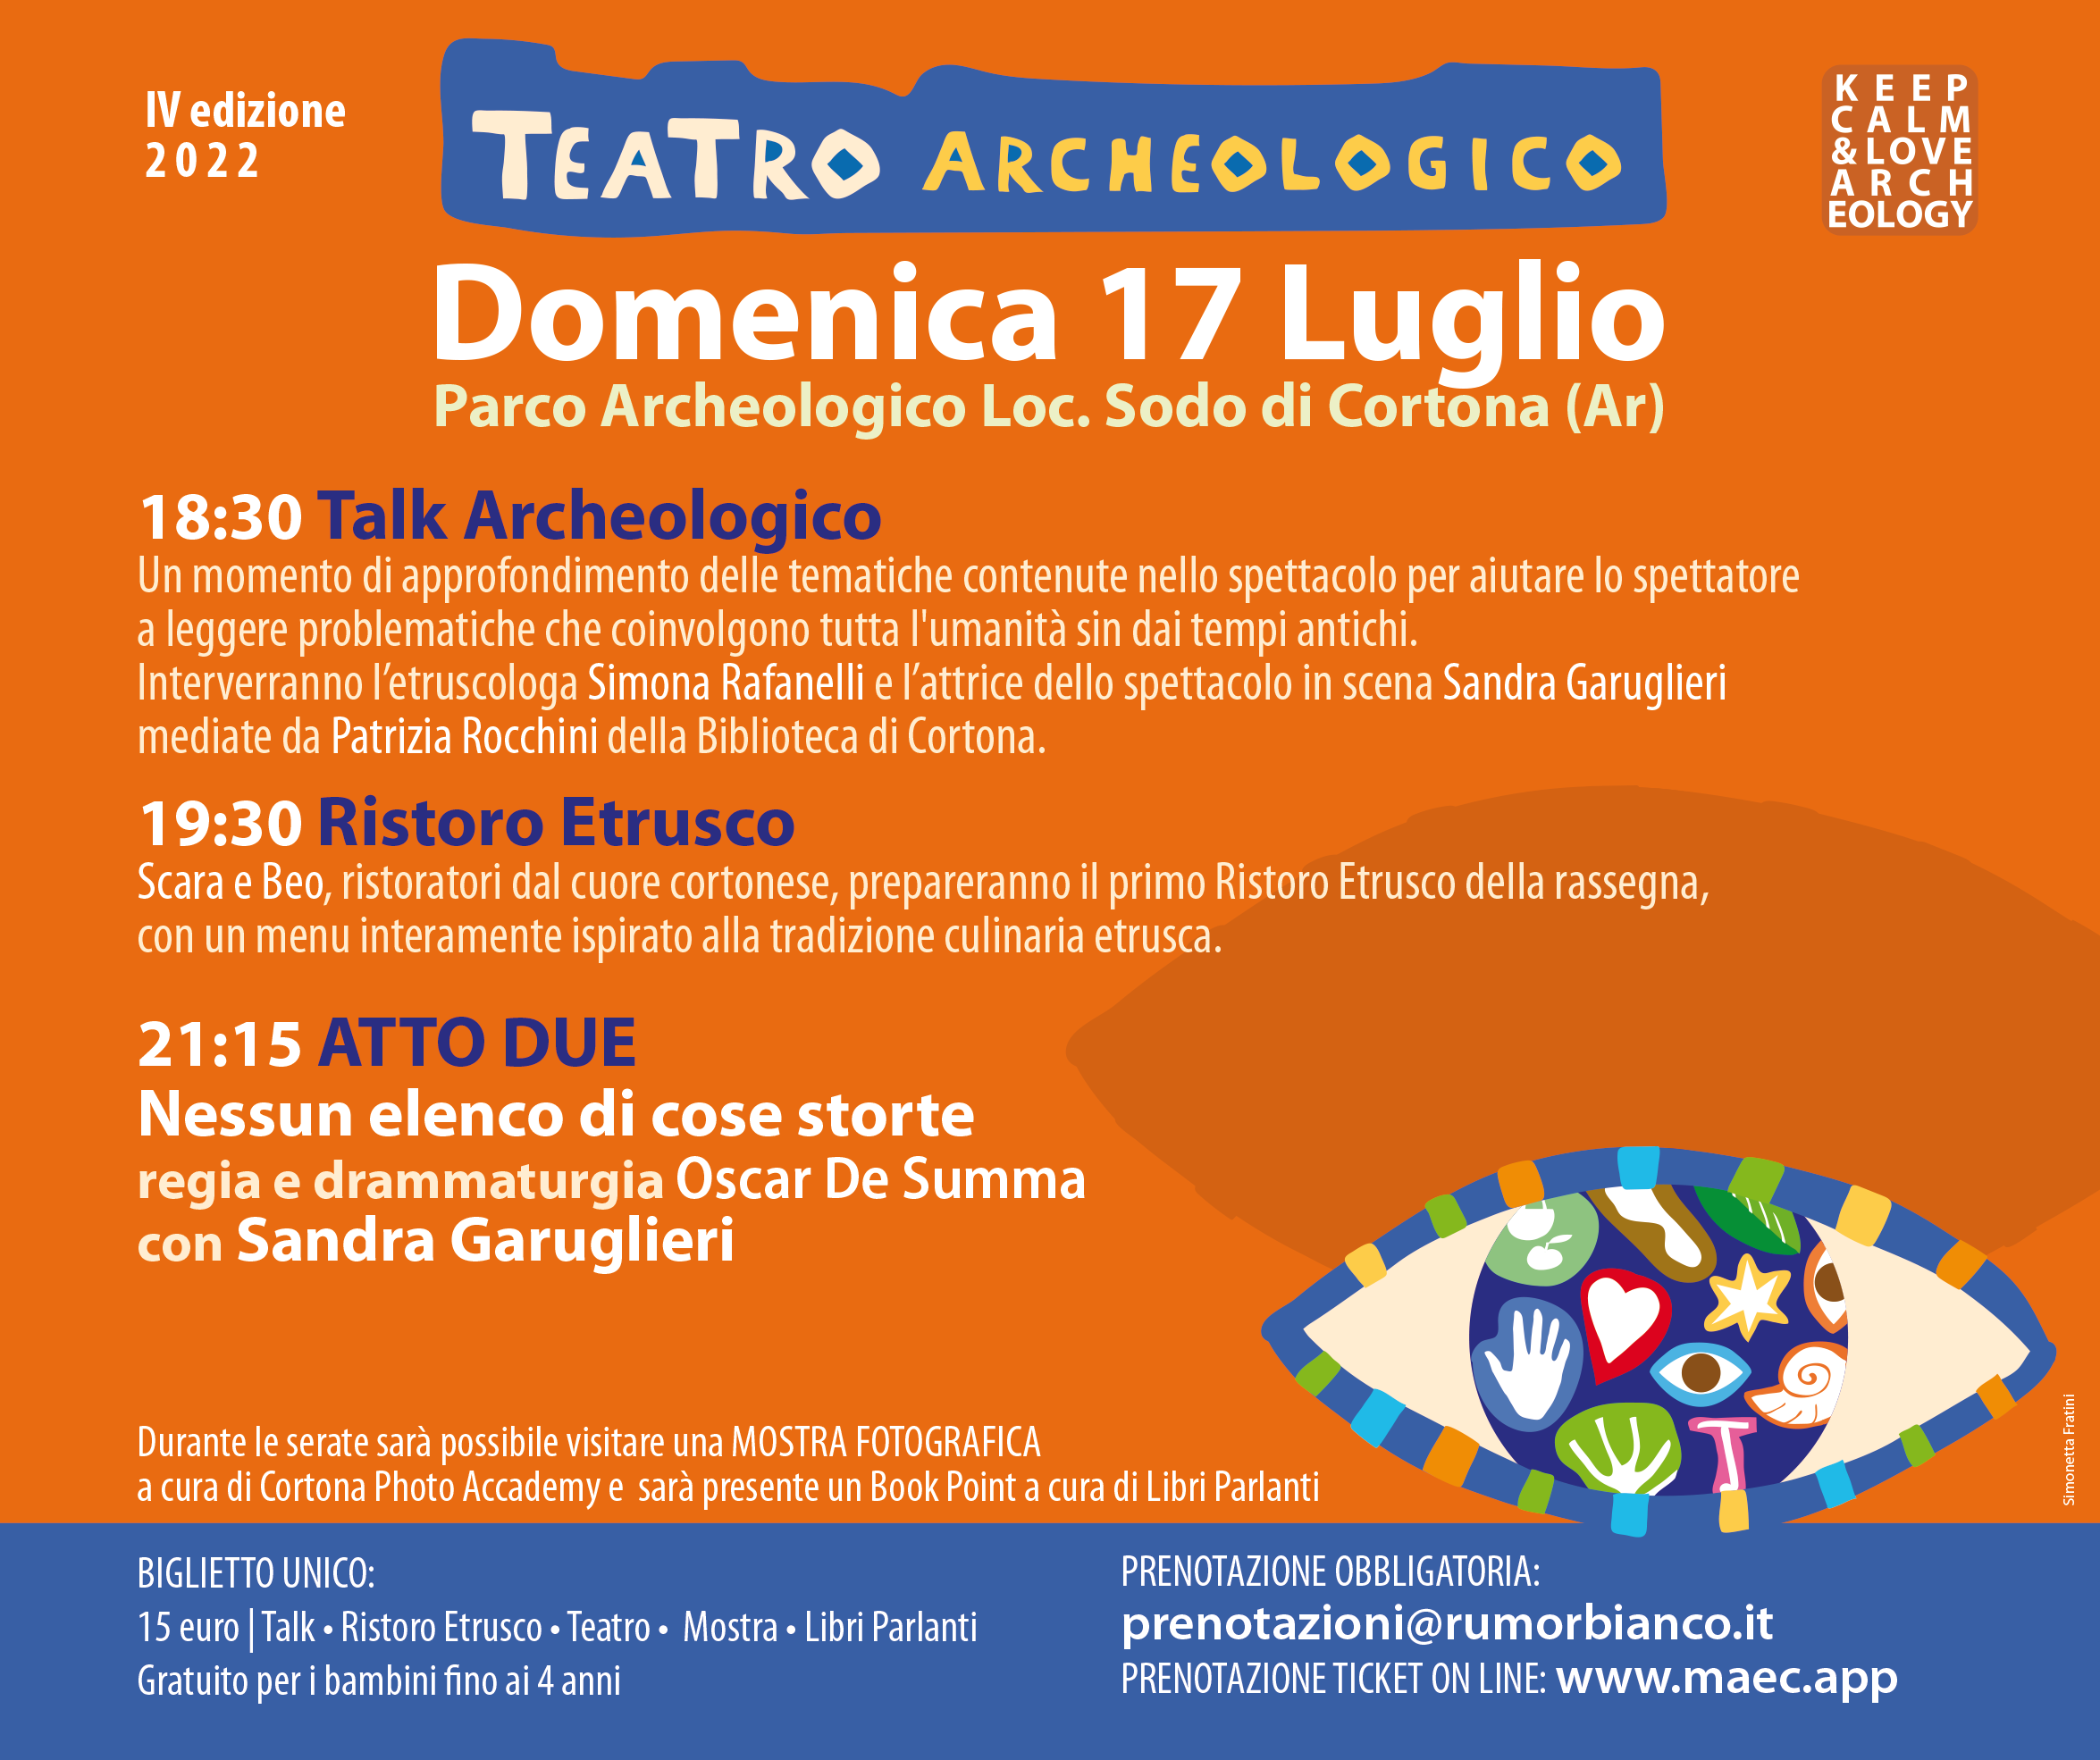 Post giornata 17 luglio IV edizione Teatro Archeologico - Cortona (AR)